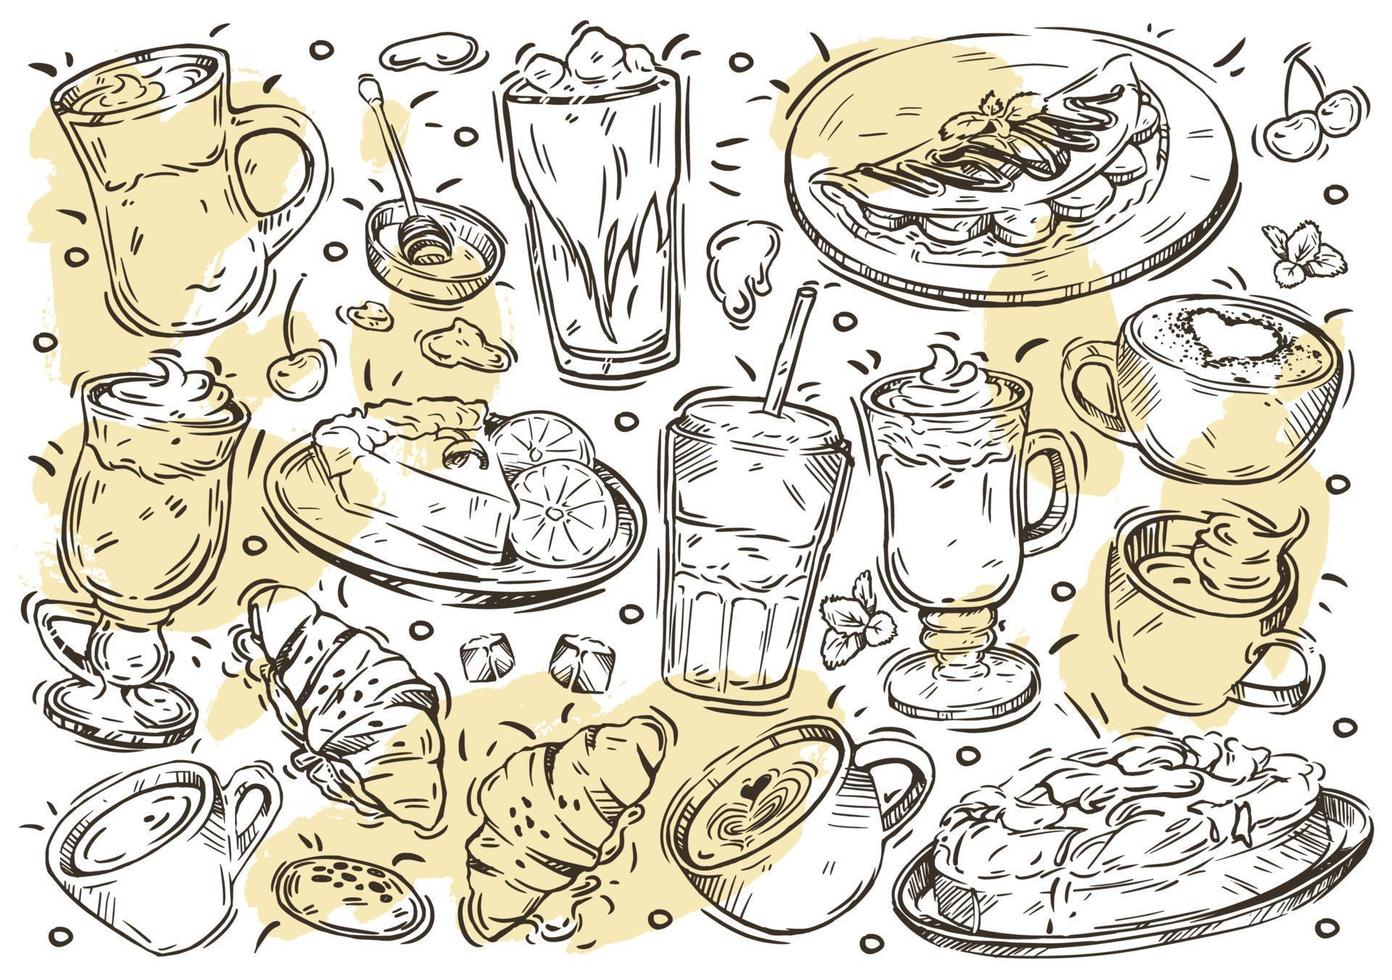 handritad linje vektor illustration mat och dryck meny på vita tavlan. doodle kaffe och dessertkort, americano, cappuccino, latte macchiato, frappe, mocaccino, cheesecake, croissant